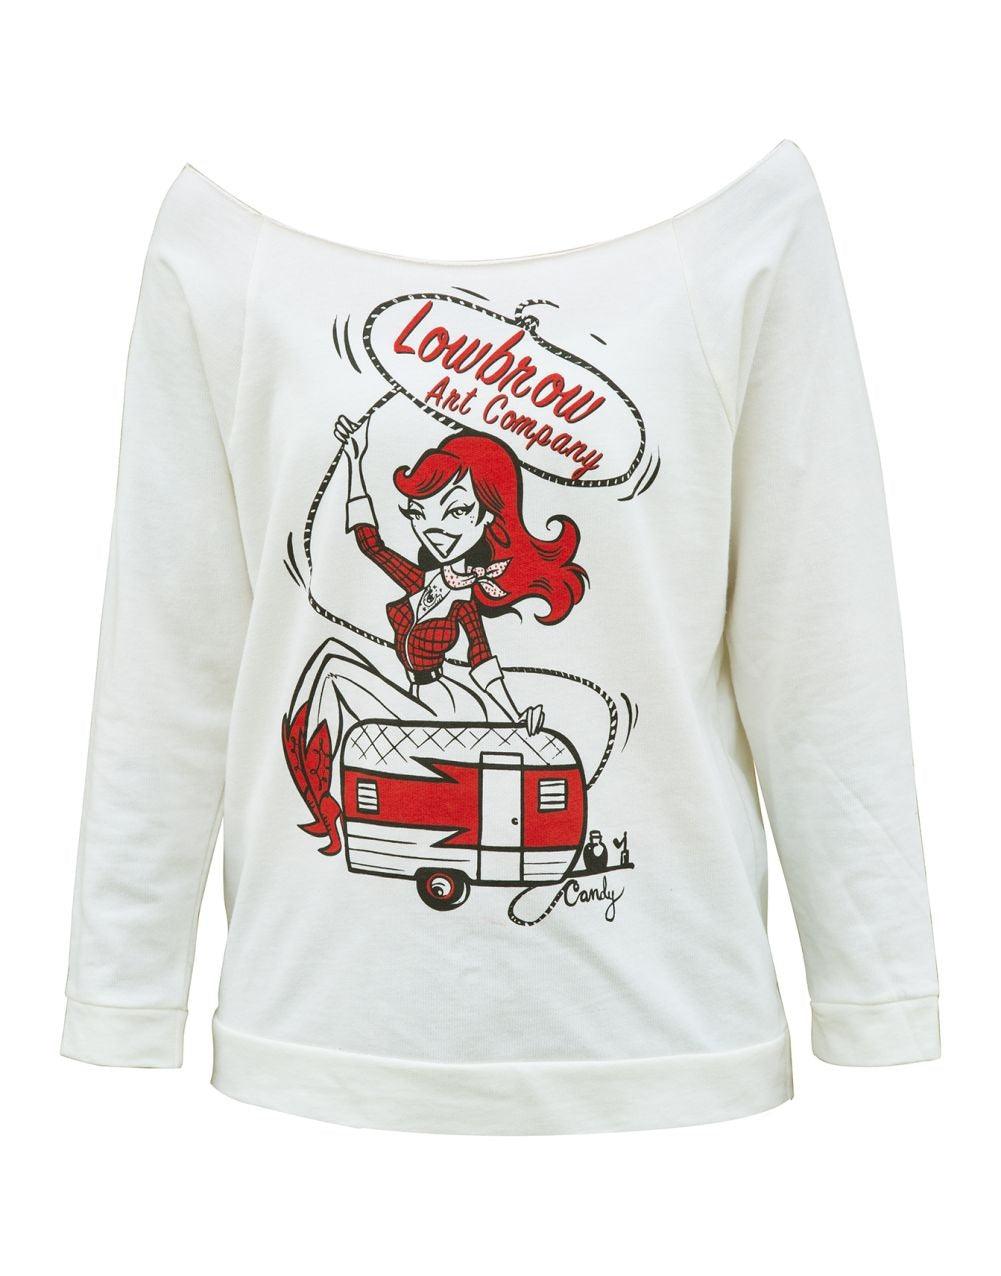 Candy Wild Cow Girl Up Scoop Neck Sweatshirt - Flyclothing LLC